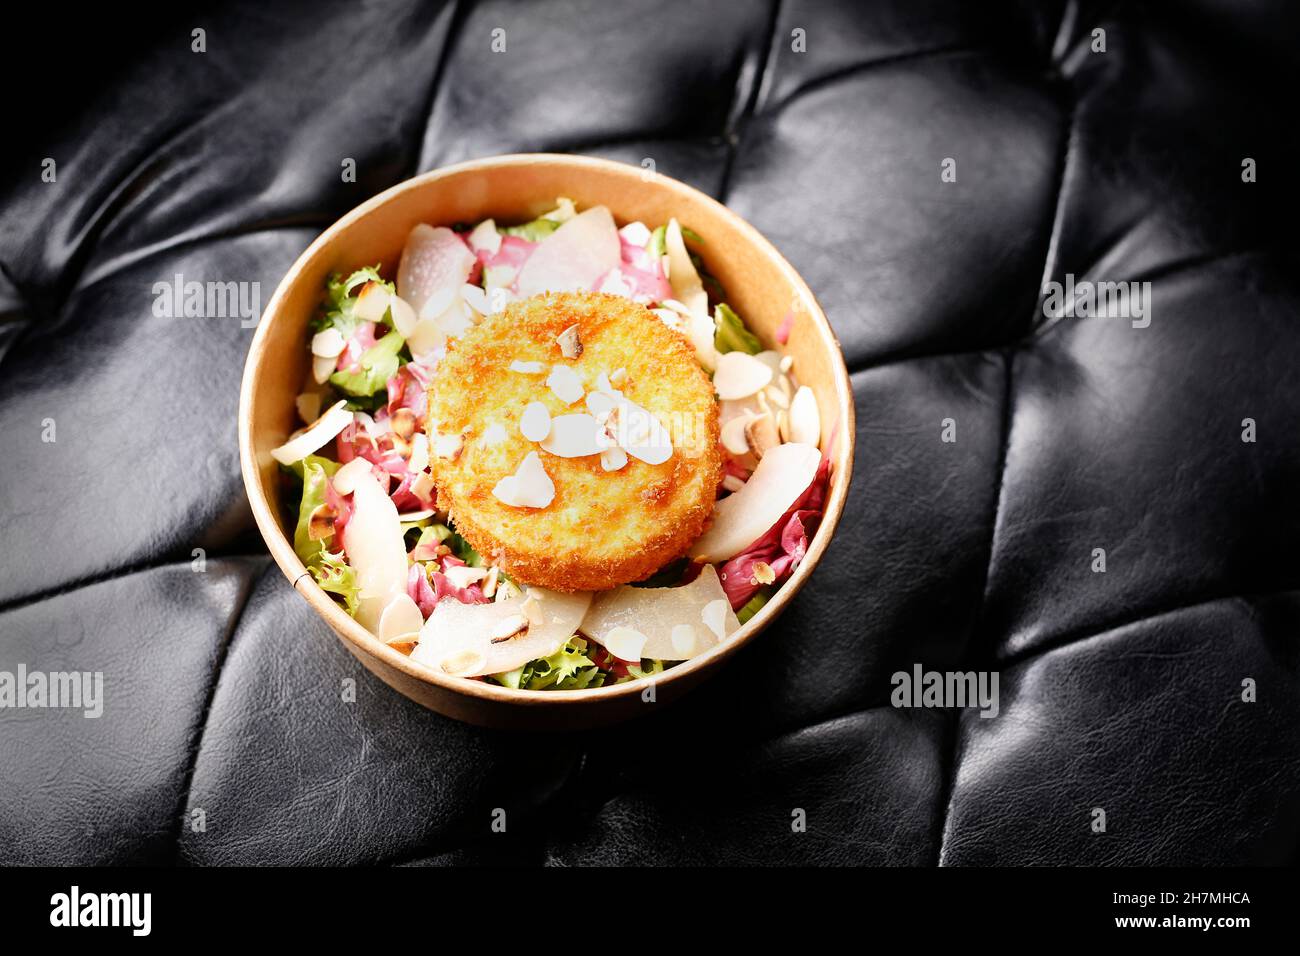 Fromage camembert frit sur une salade verte.À emporter, boîte de régime.Plat prêt-à-emporter appétissant servi dans une boîte jetable.Photographie culinaire.Fond de nourriture Banque D'Images